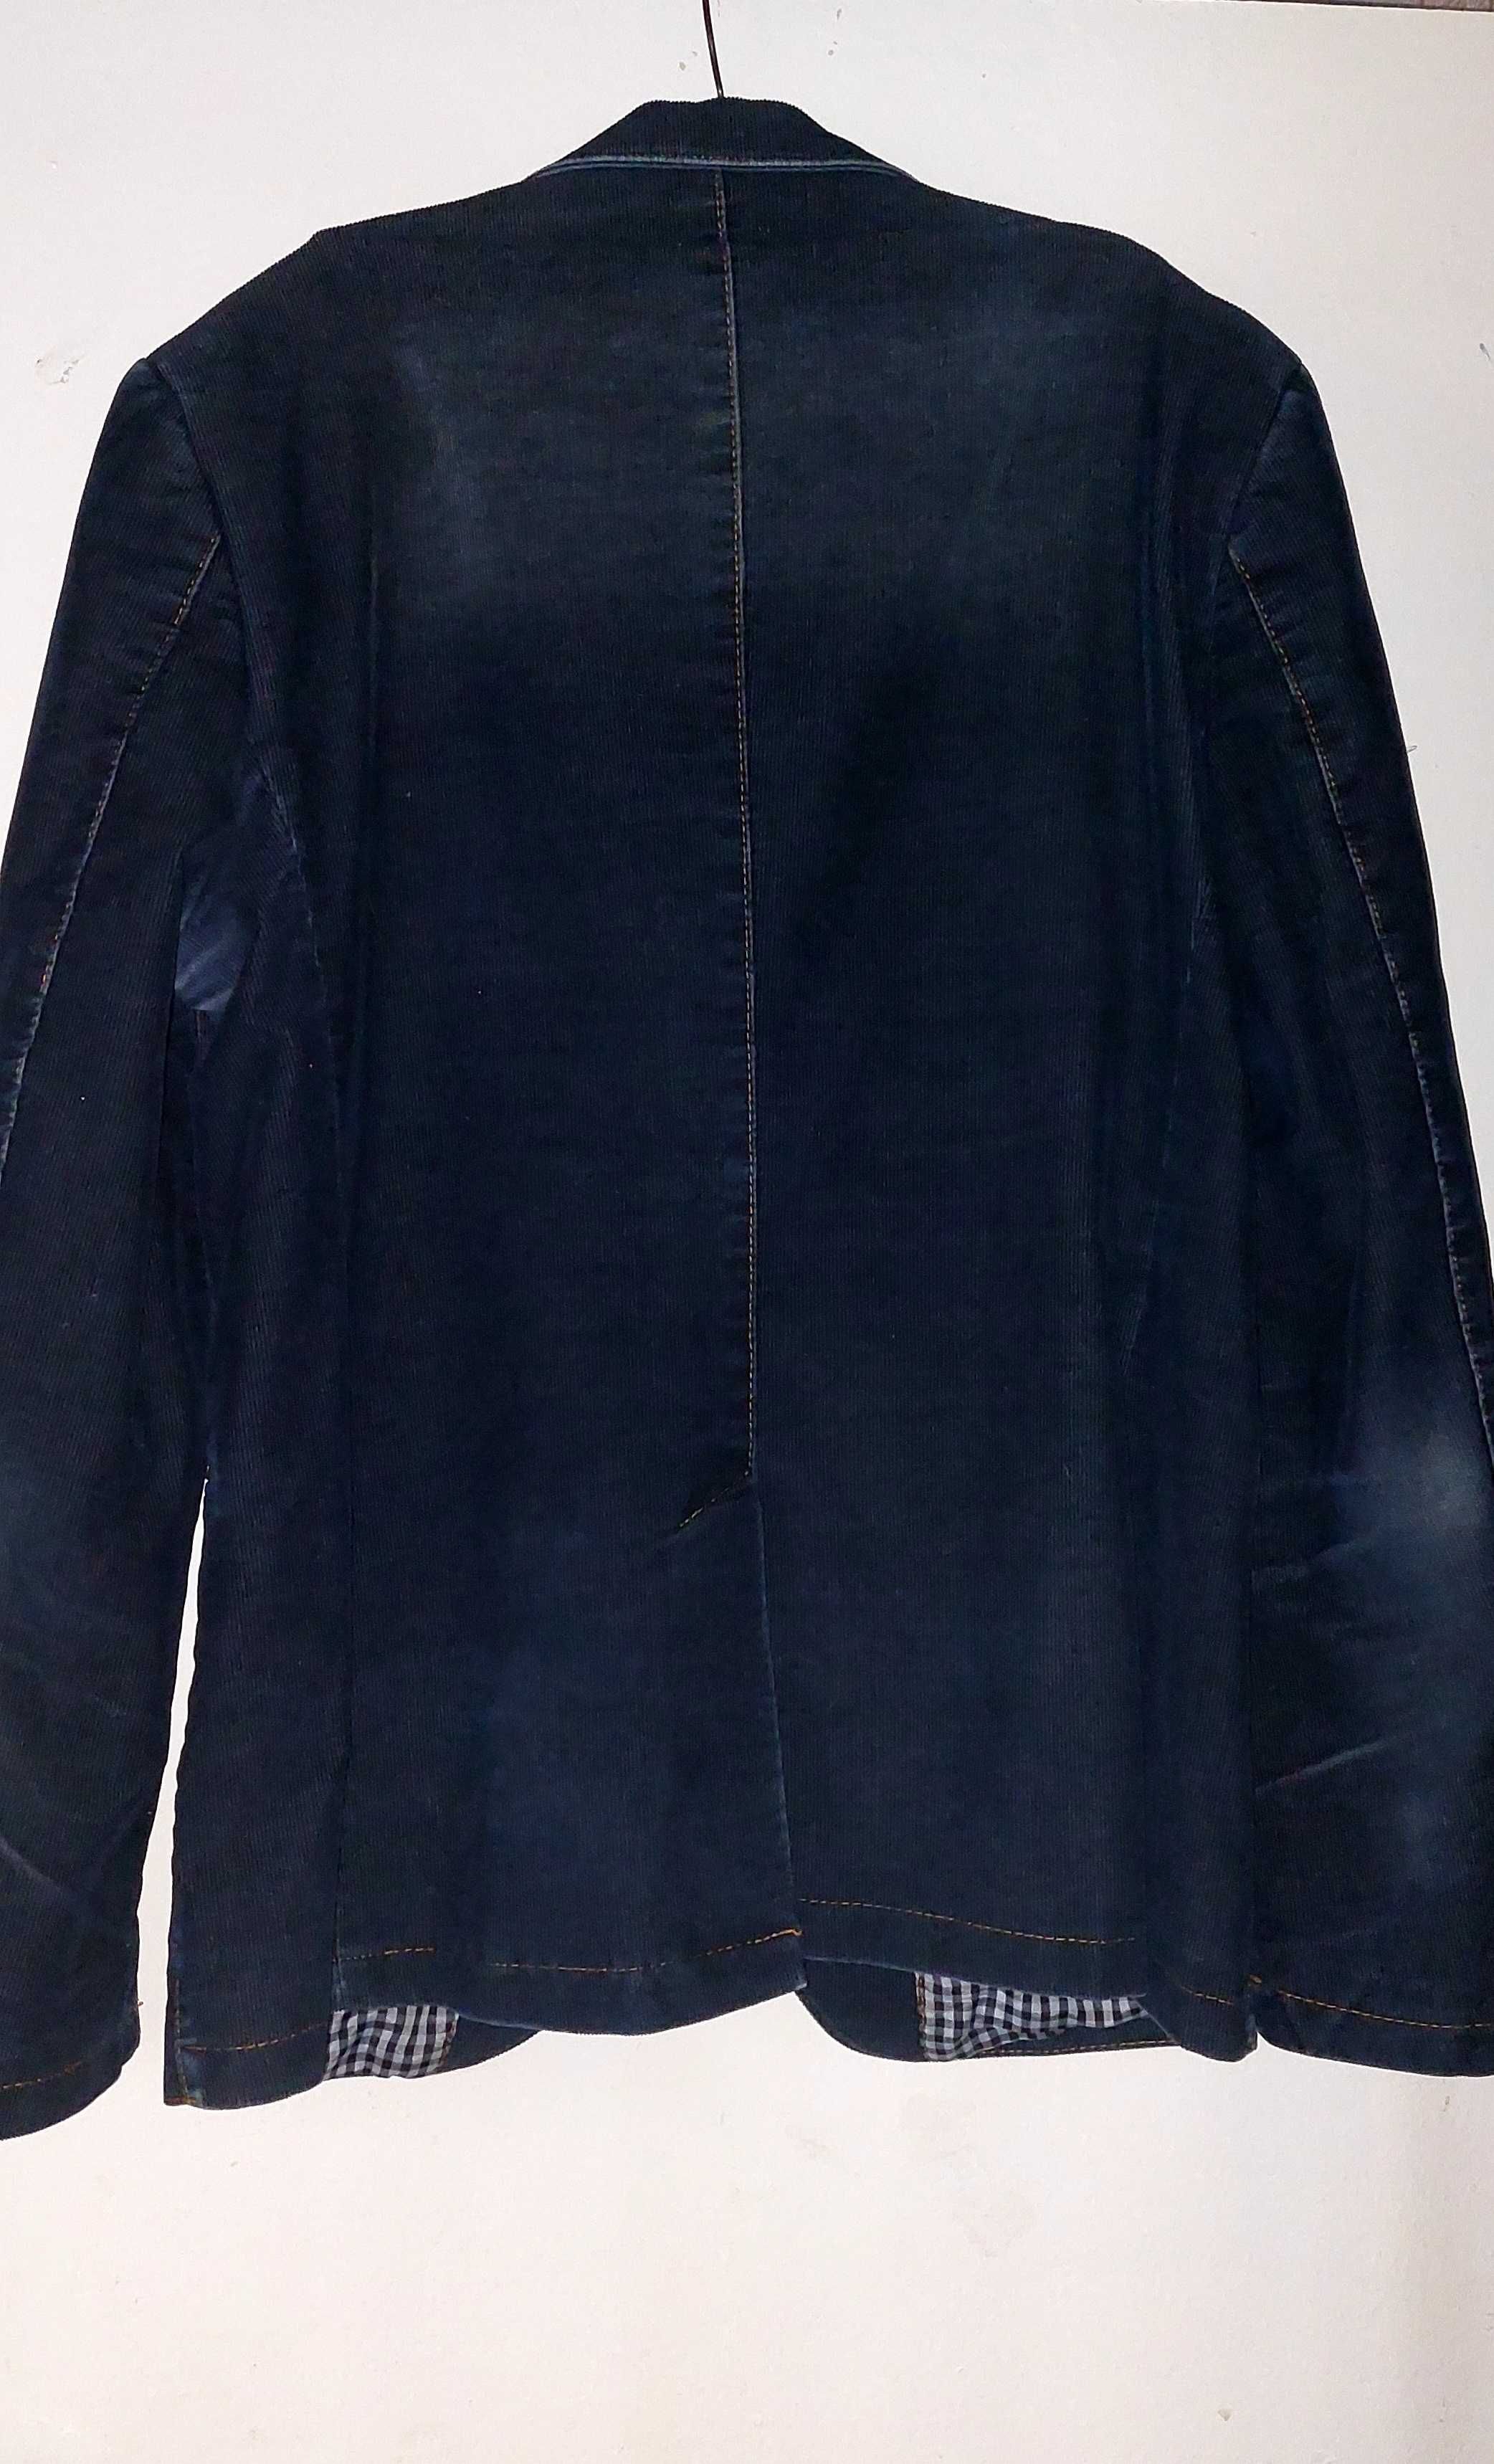 Мужской стильный вельветовый пиджак 48-50 р